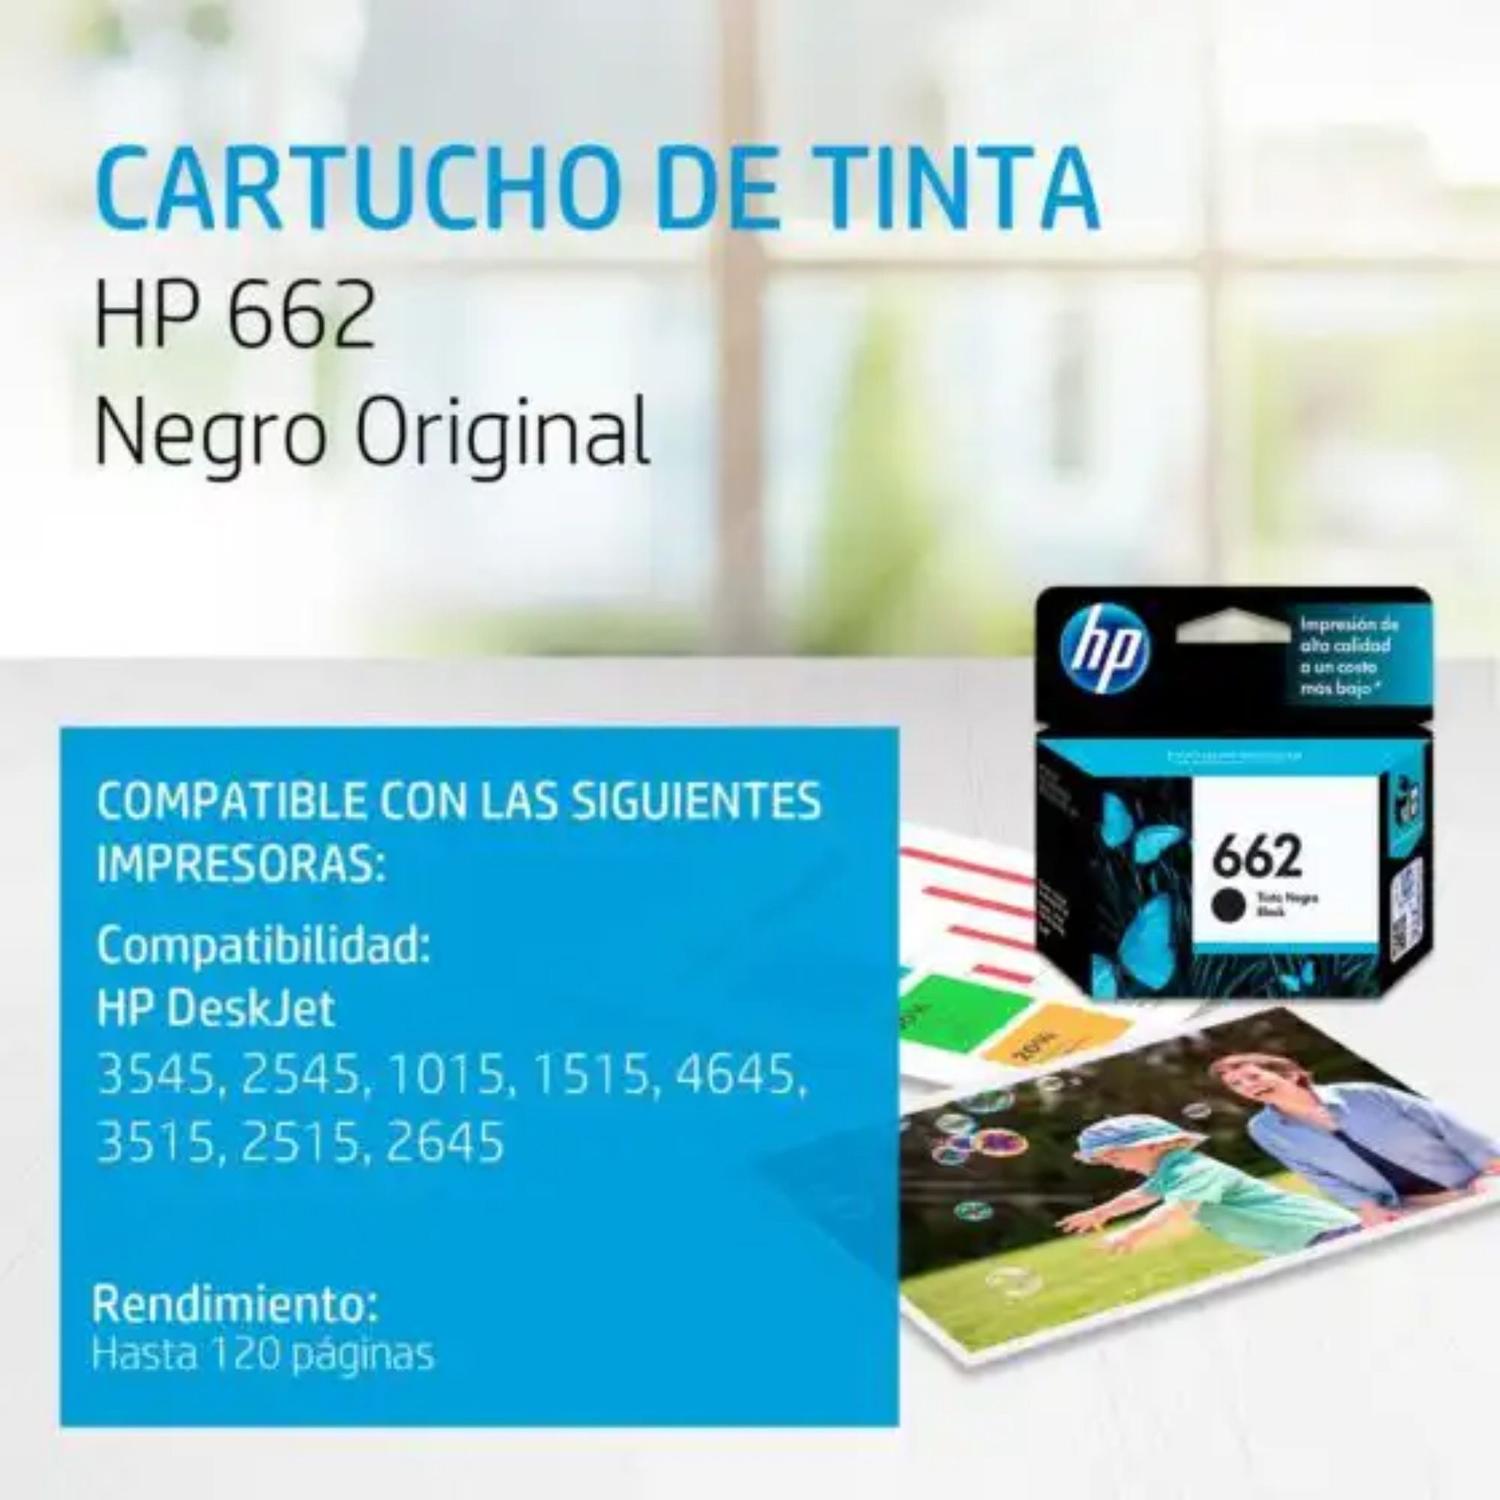 TINTA HP 662 NEGRO P/ 1015,1515,2515,3515,2545,3545,26 (CZ103AL)